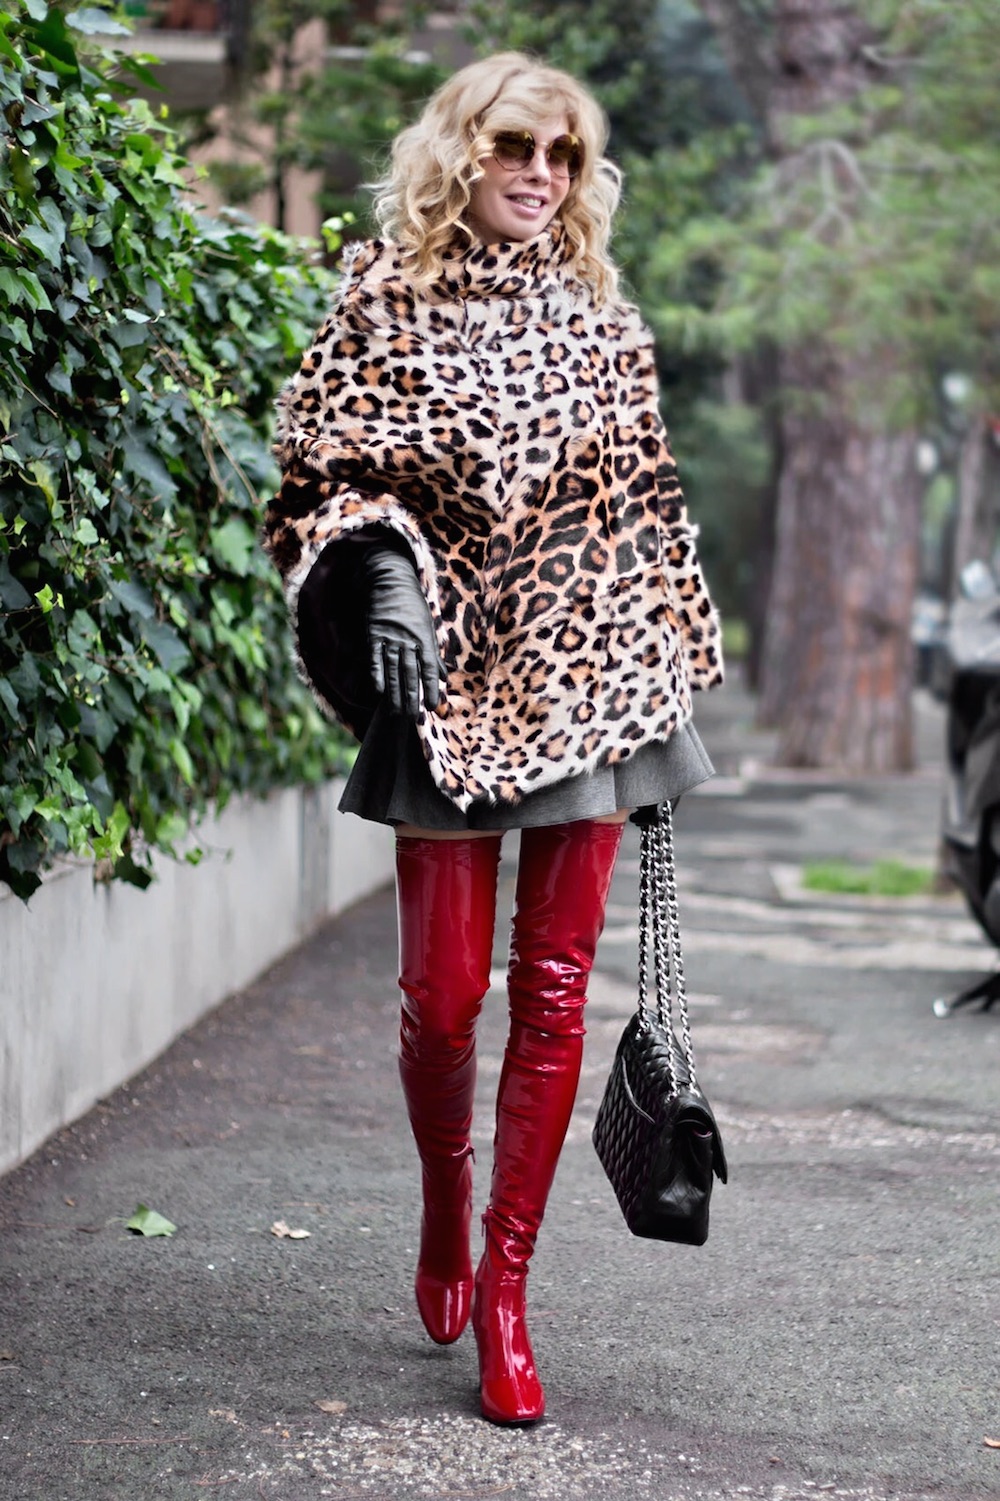 cappe e mantelle la moda street style le vuole più cool che mai